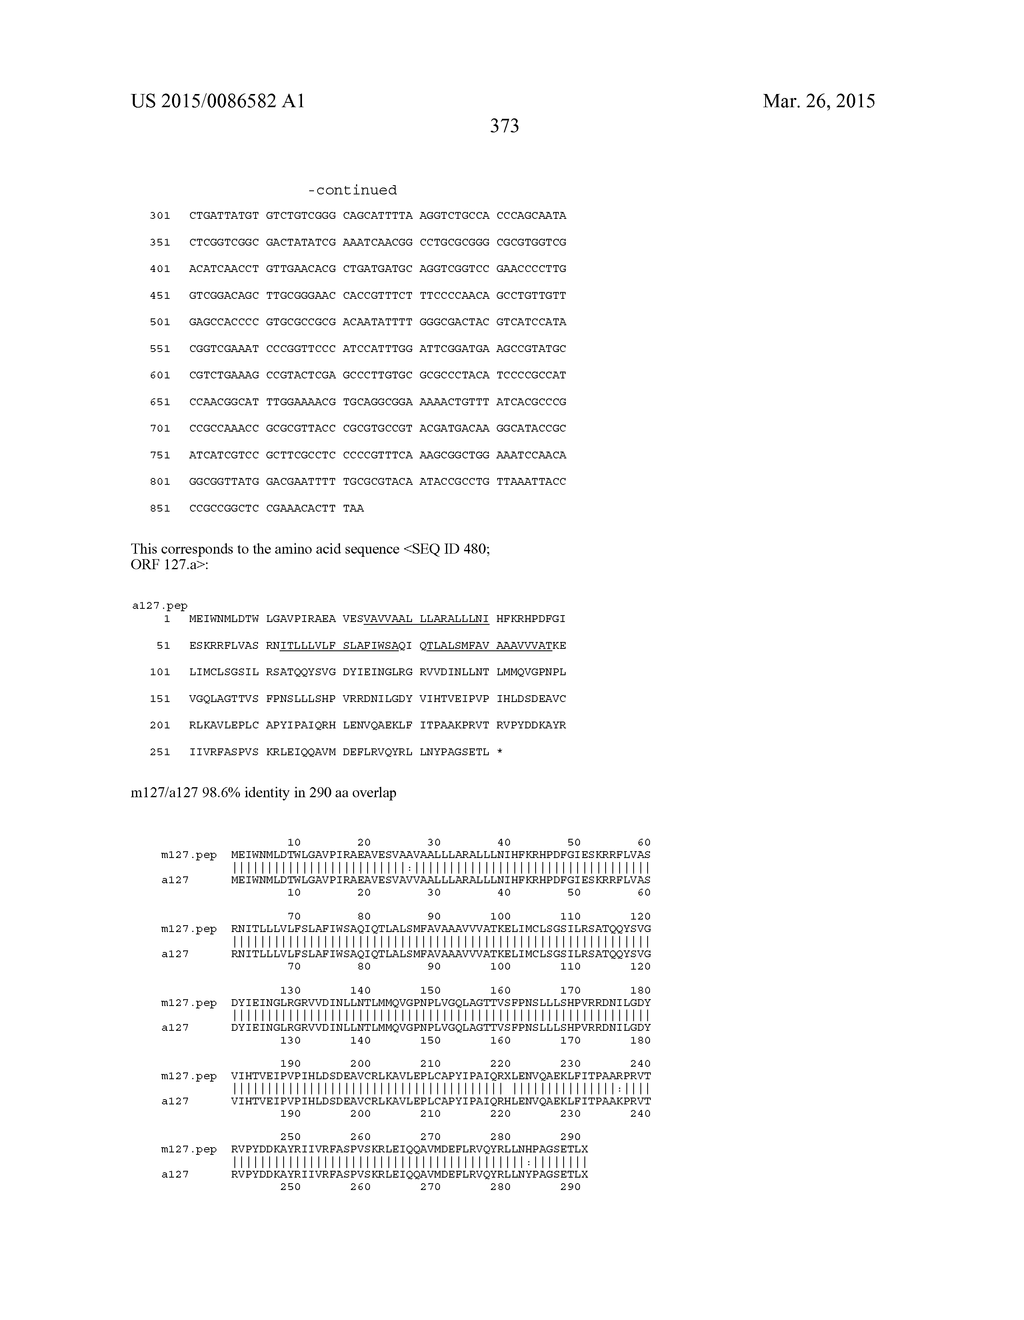 NEISSERIA MENINGITIDIS ANTIGENS AND COMPOSITIONS - diagram, schematic, and image 405